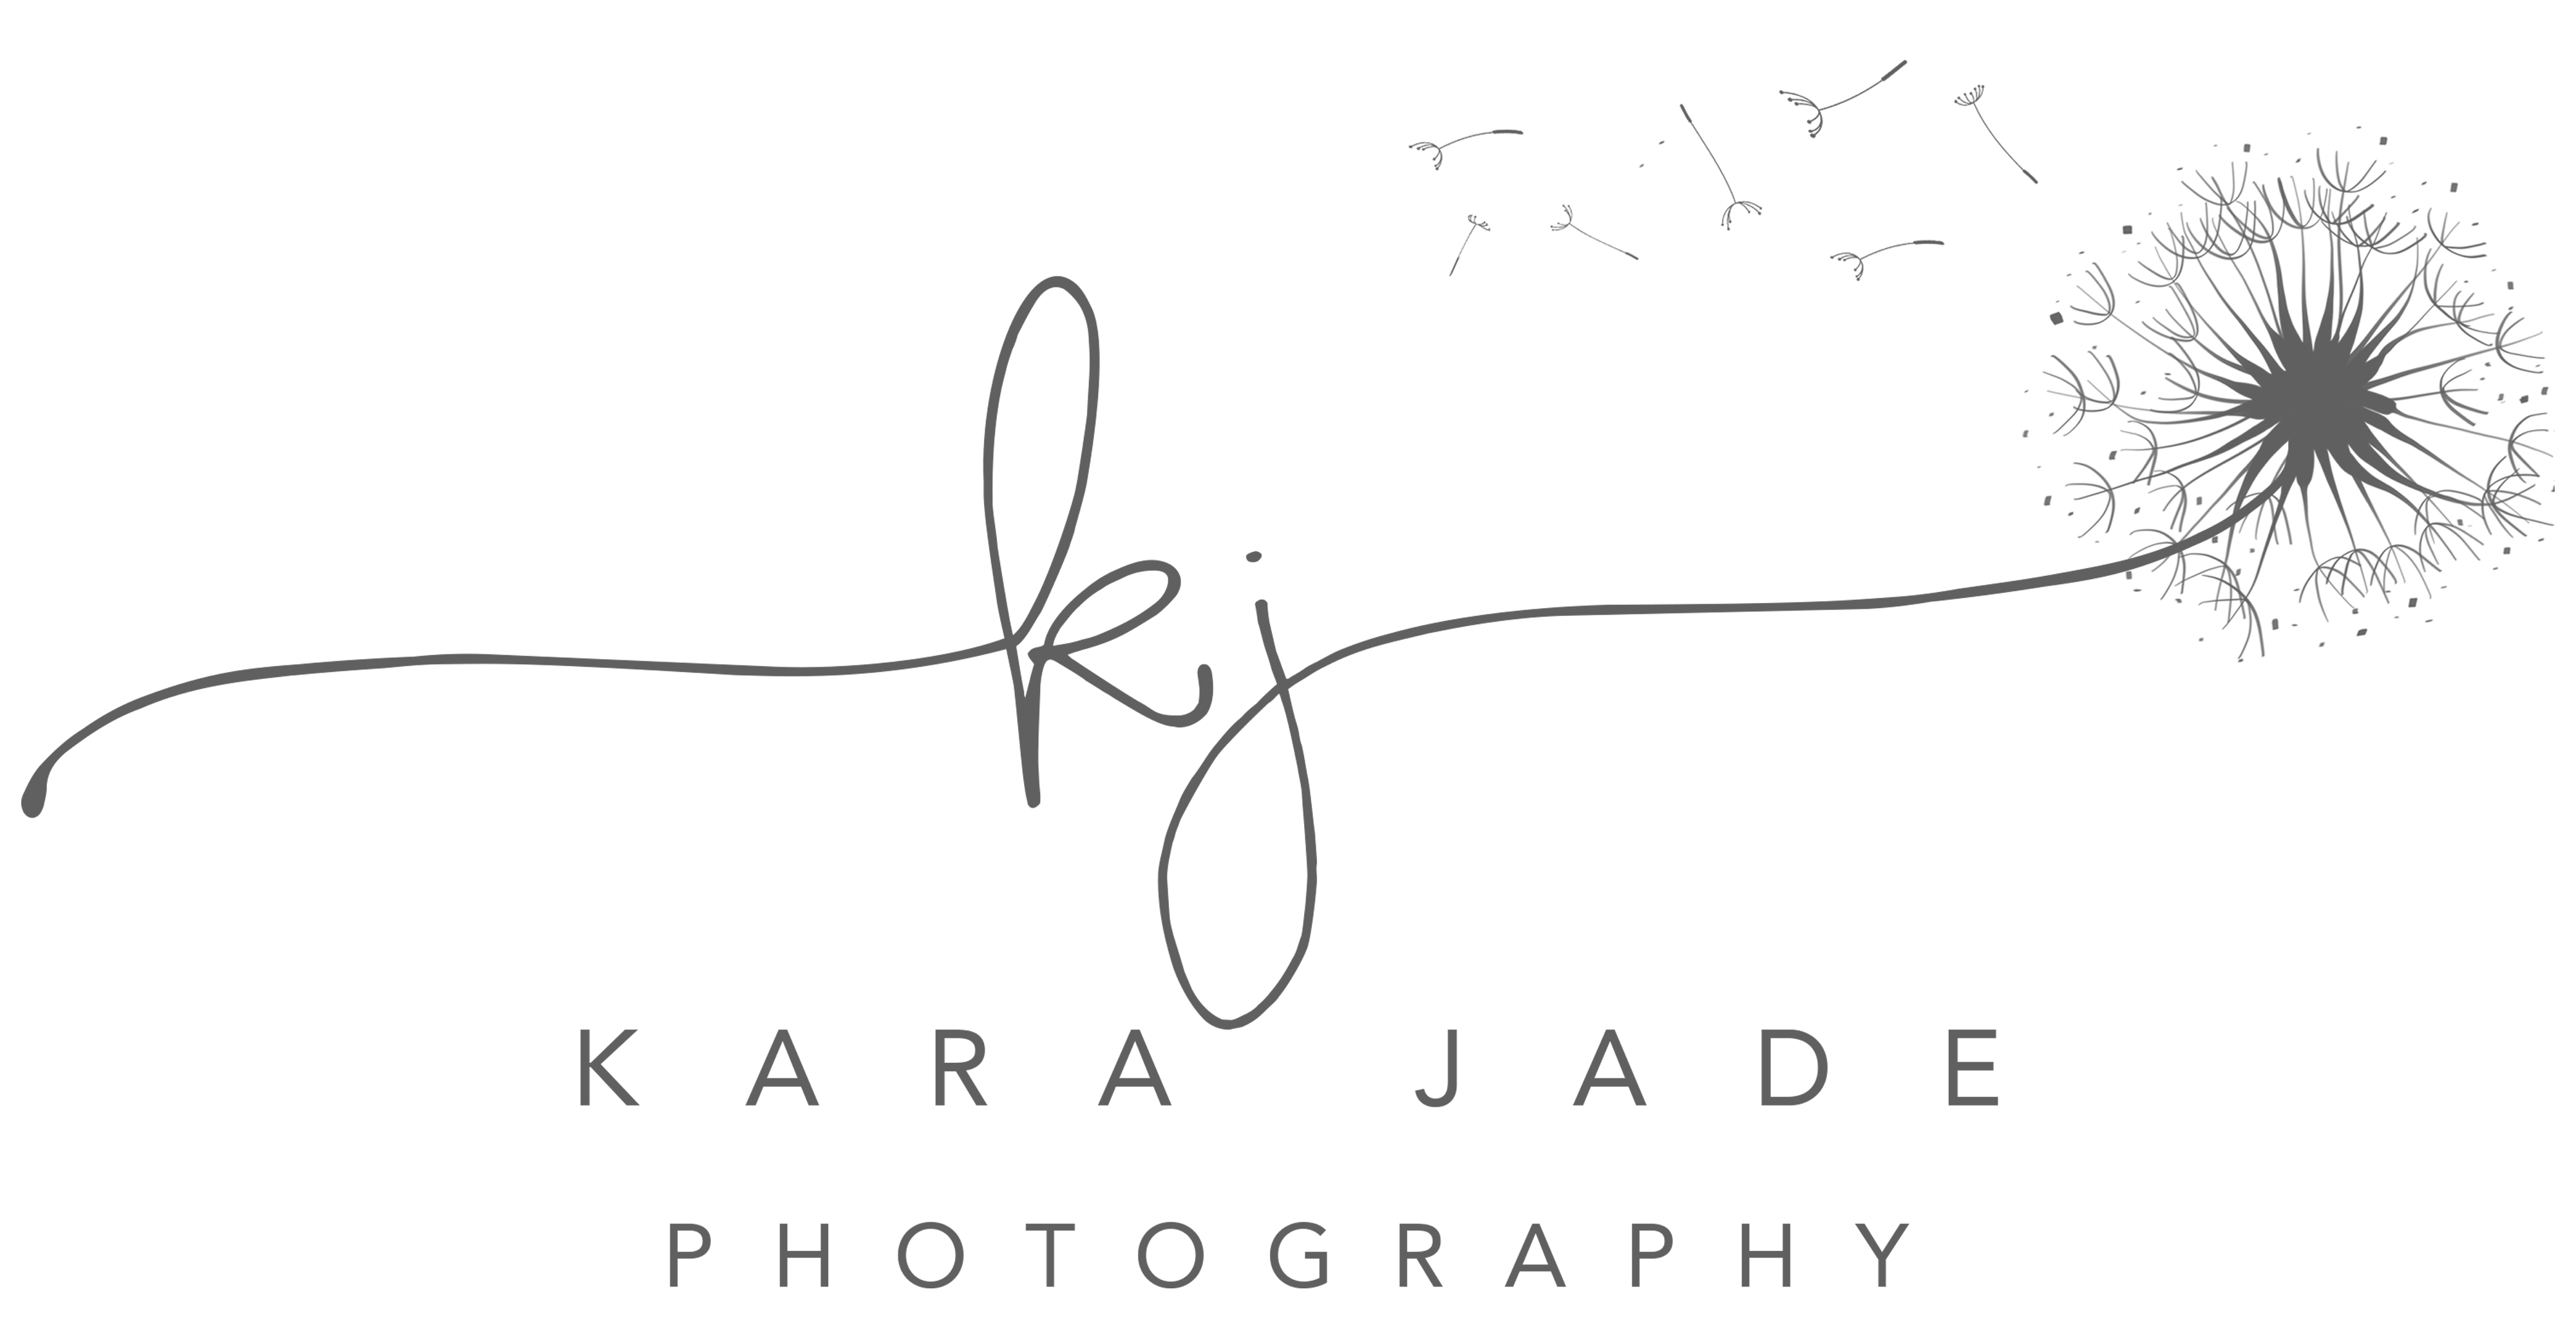 Kara Jade Photography